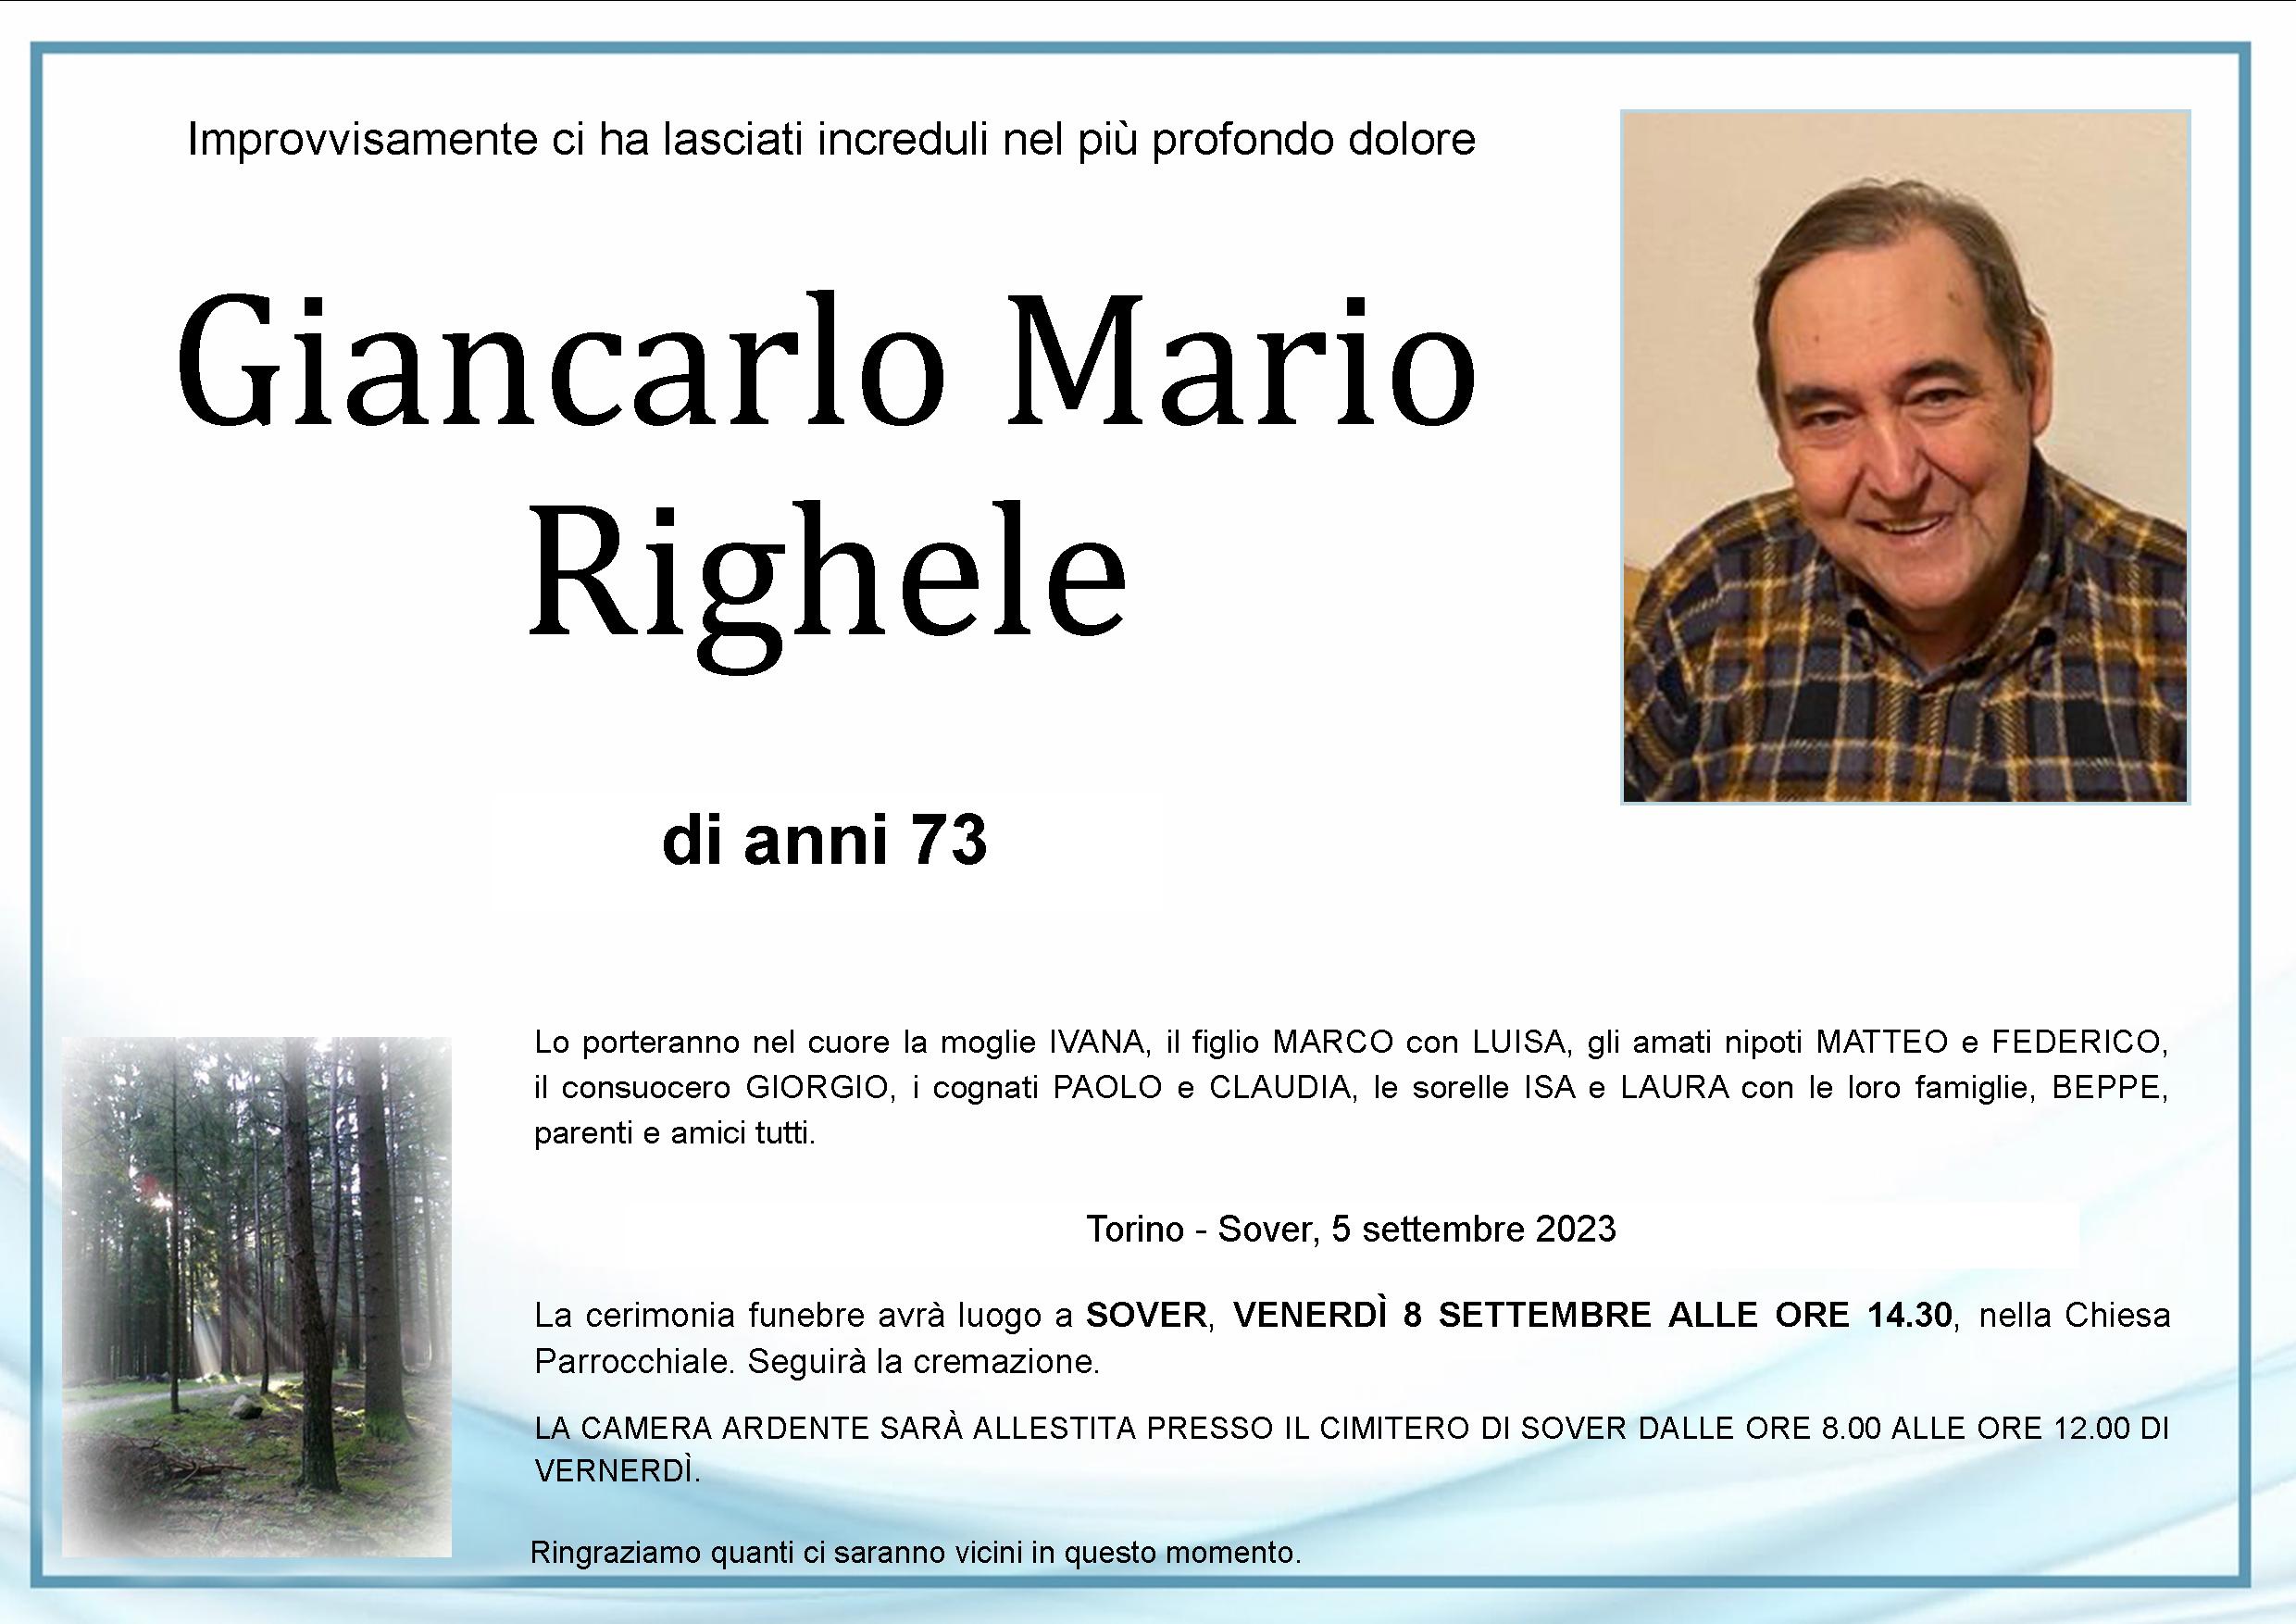 Giancarlo Mario Righele